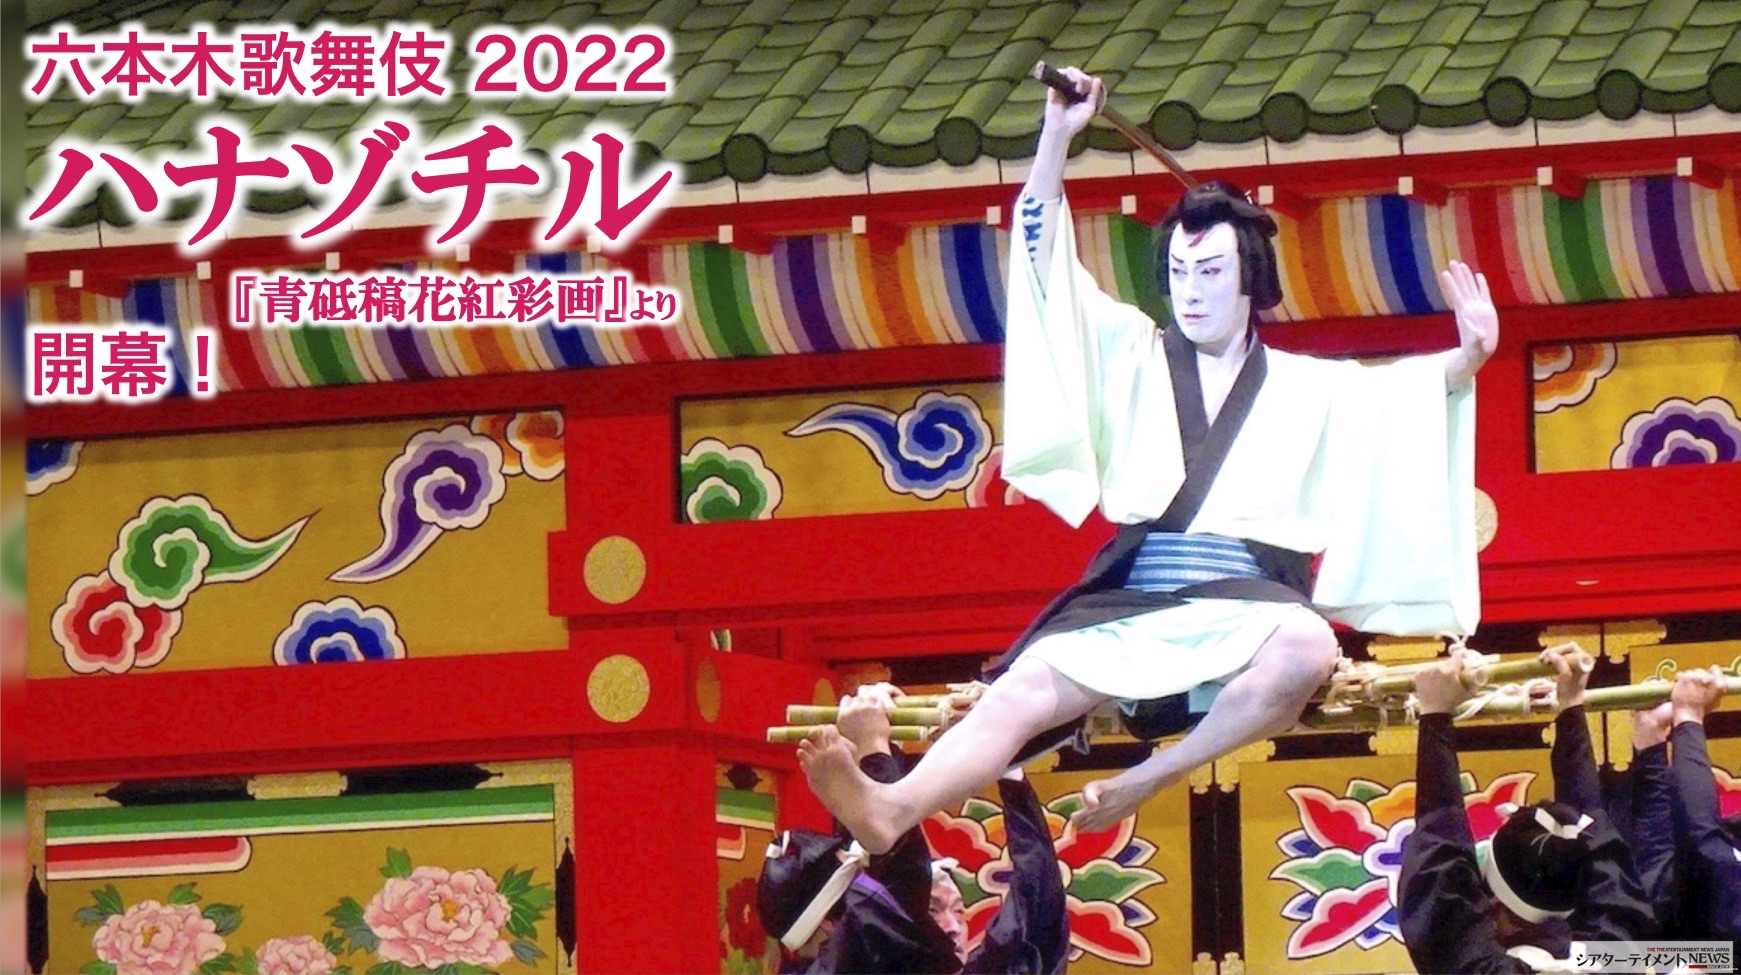 六本木歌舞伎 2022 『ハナゾチル』(『青砥稿花紅彩画』より) 開幕 